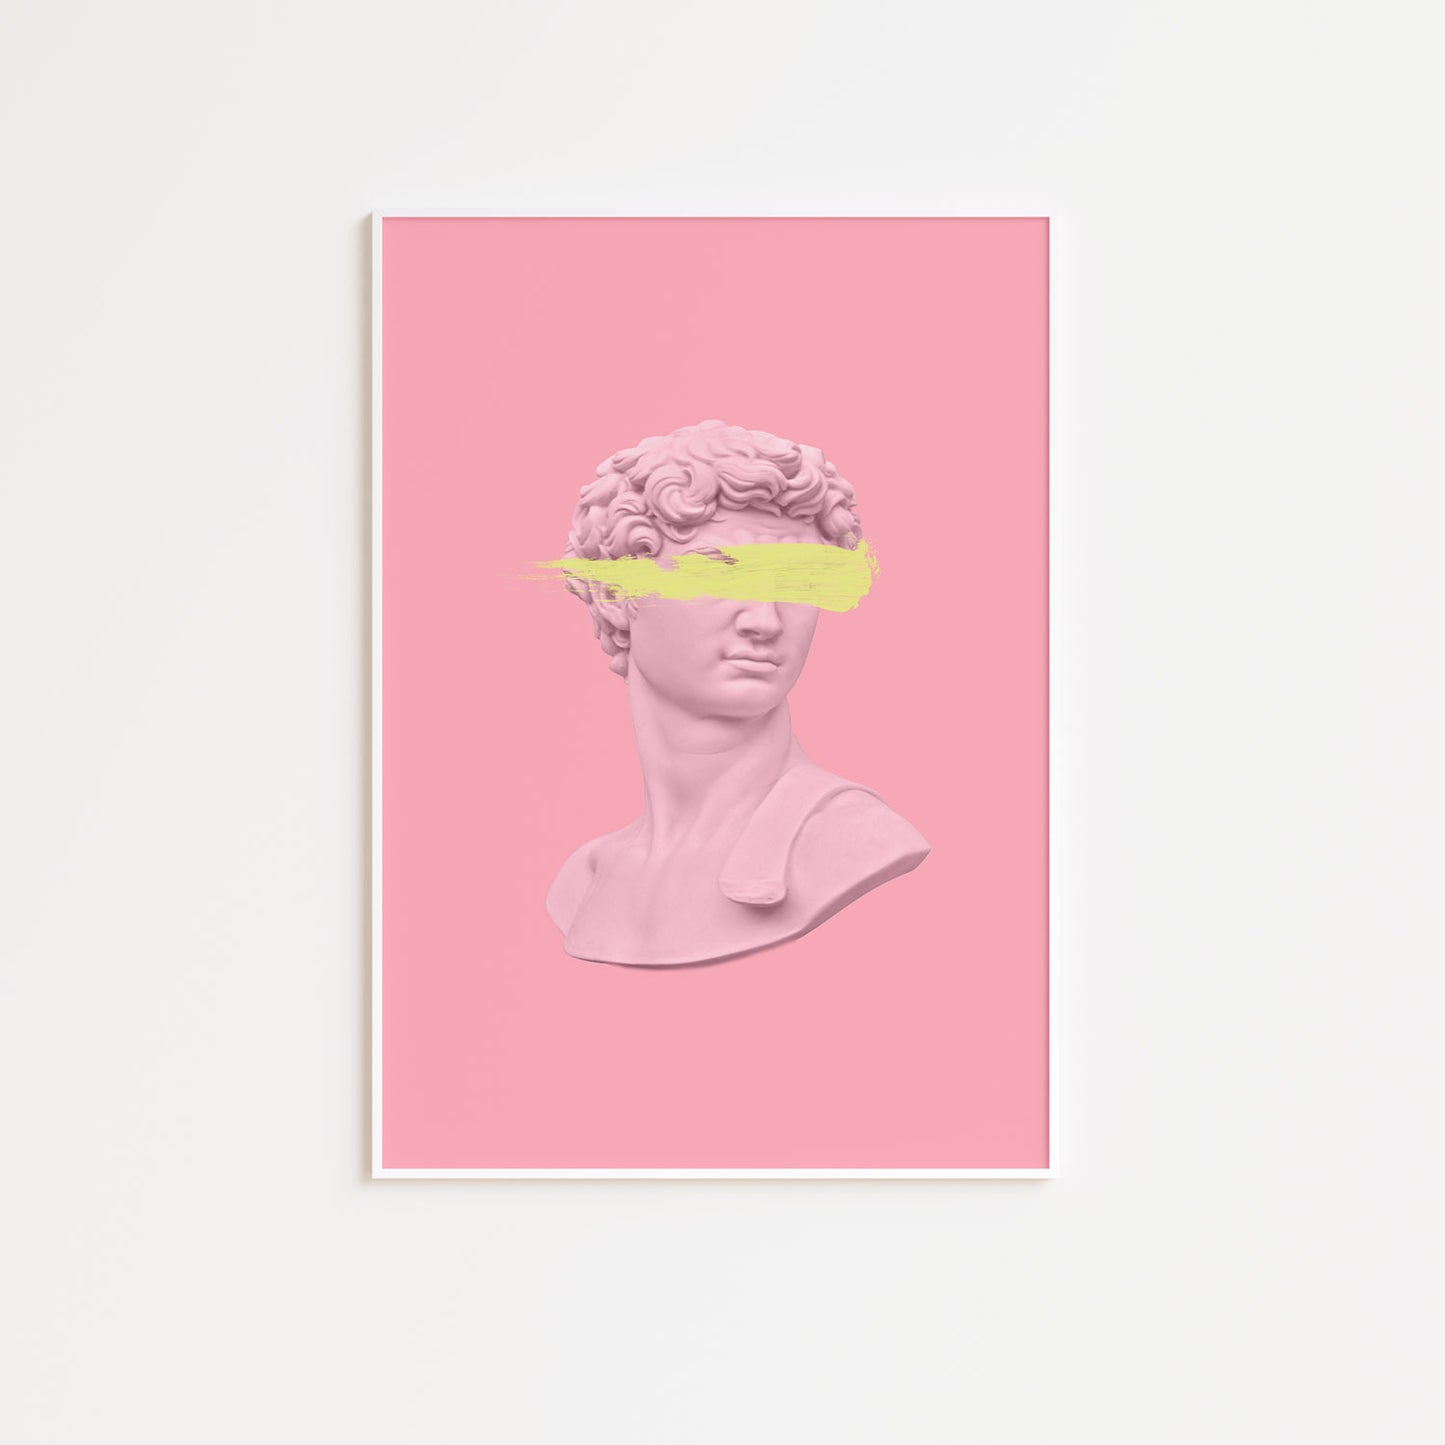 Pink and Yellow David Wall Poster Print